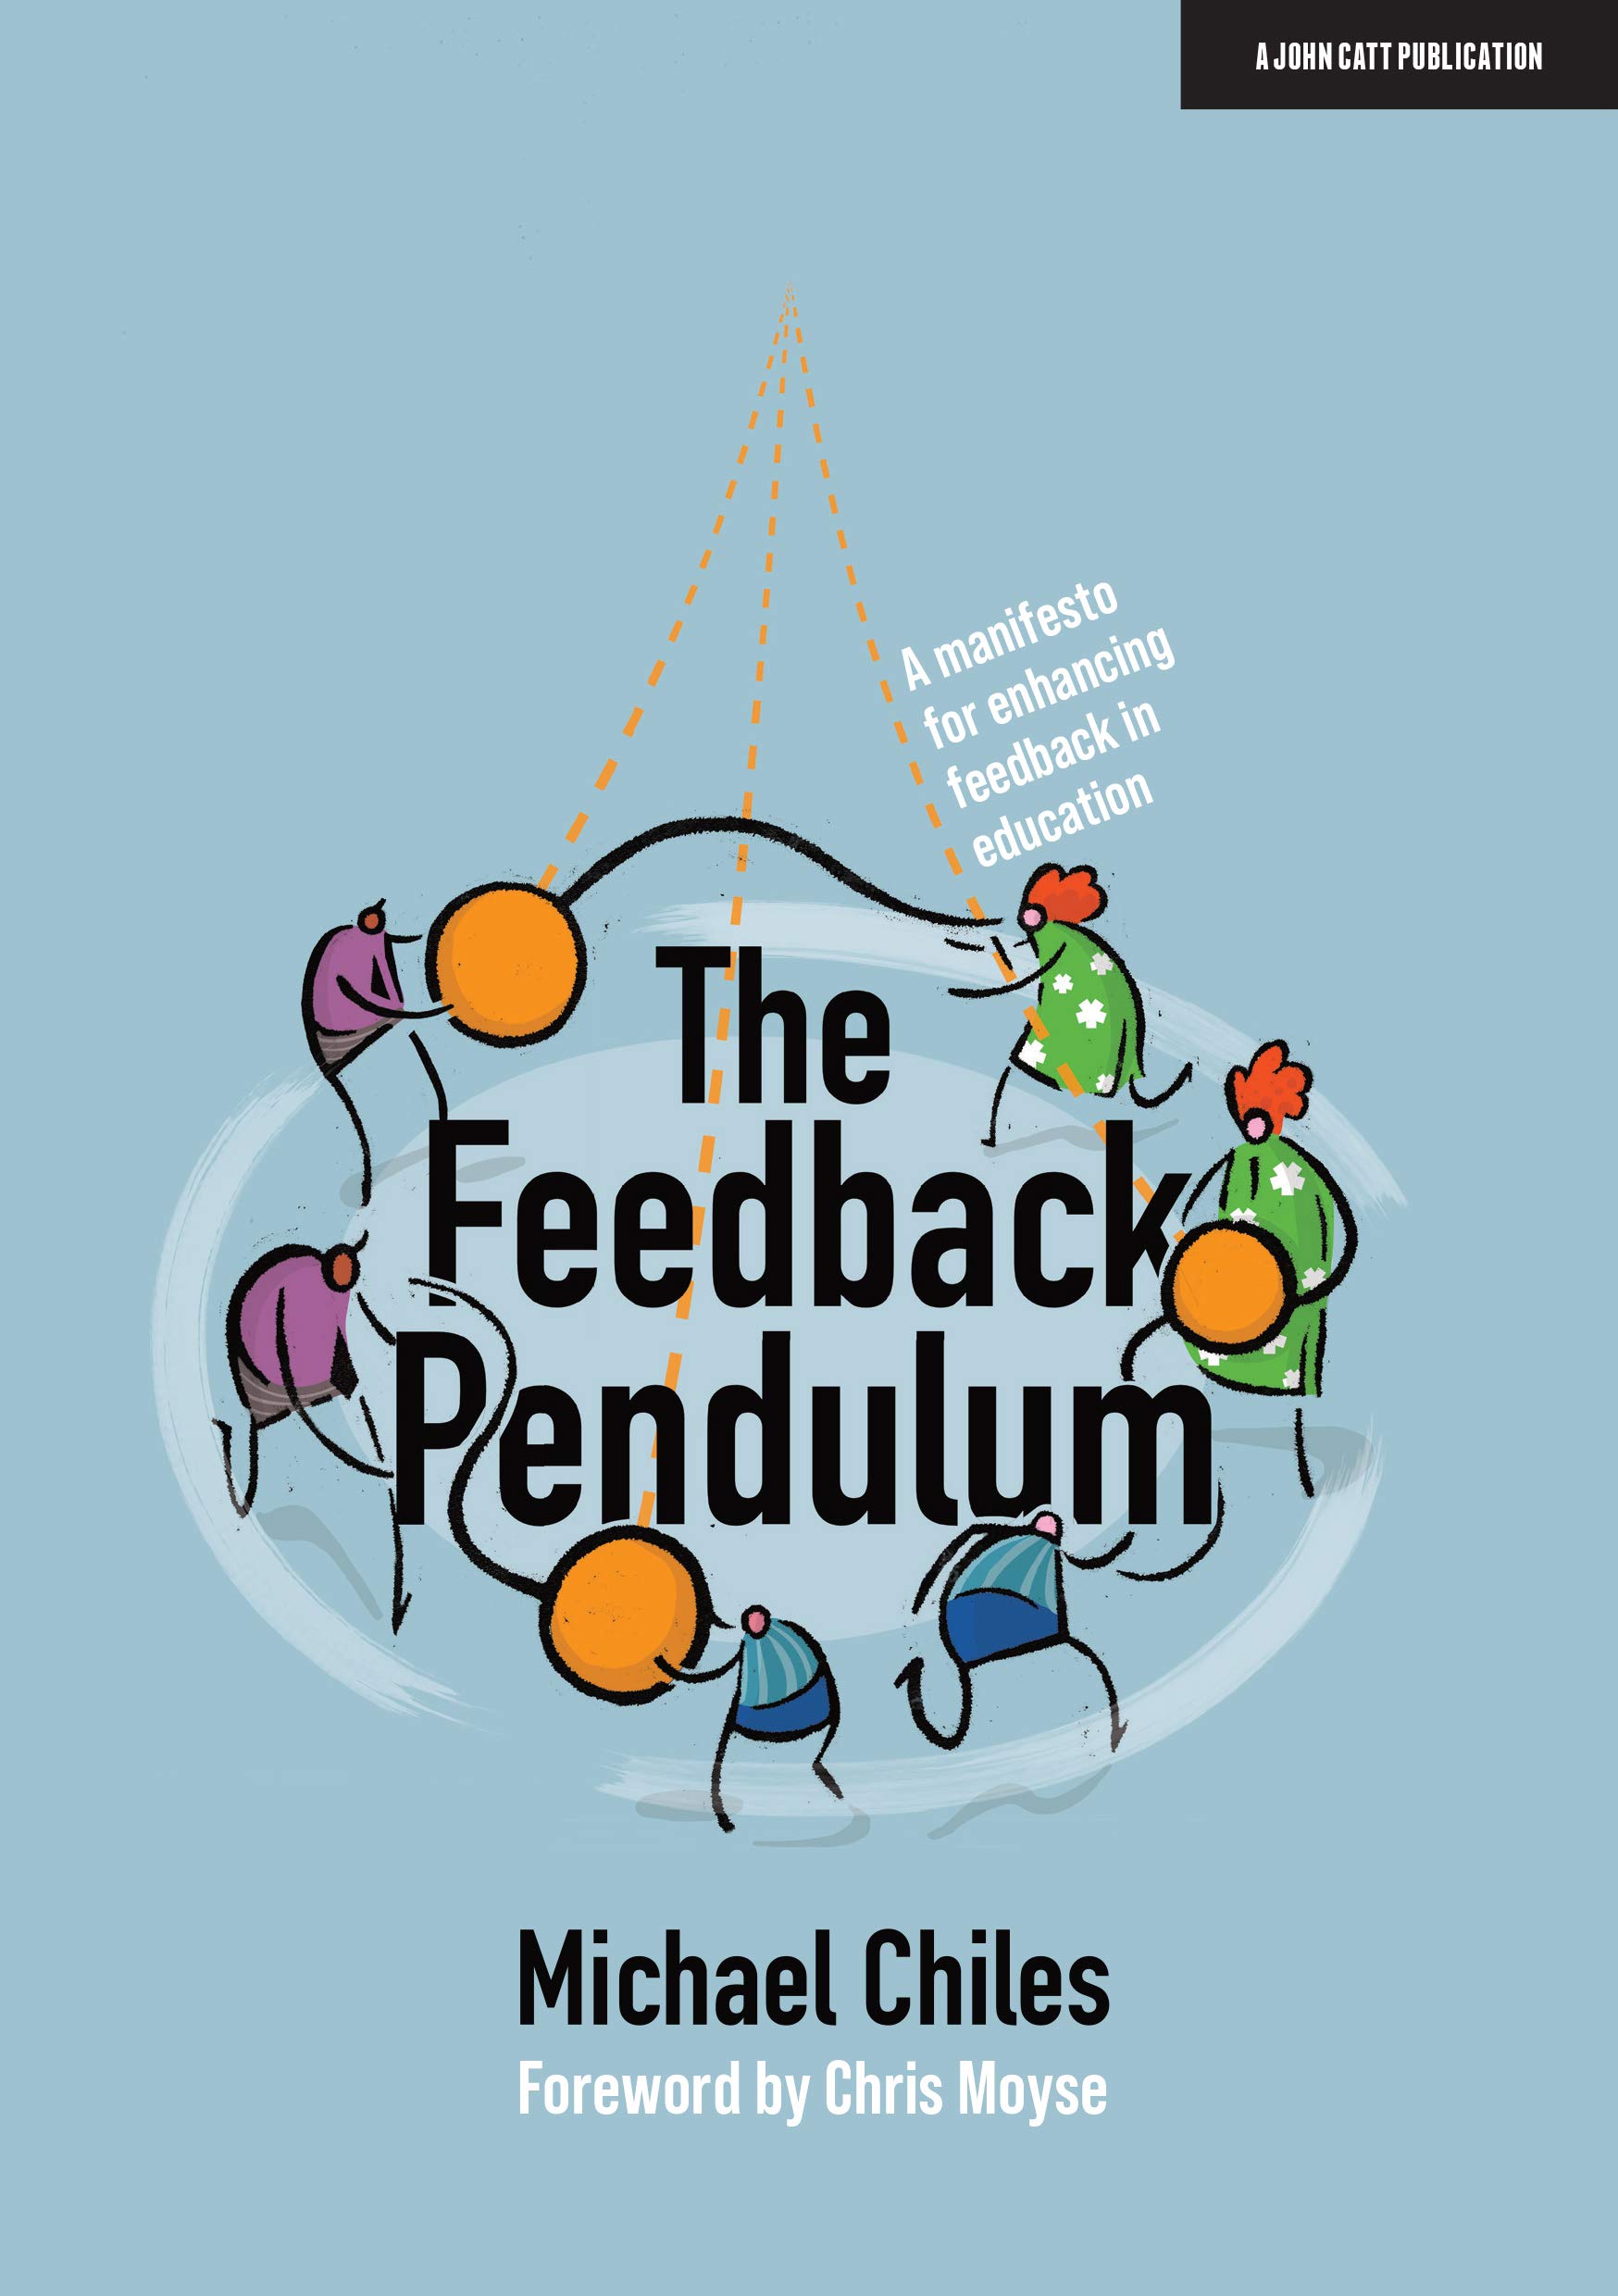 Feedback pendulum book image